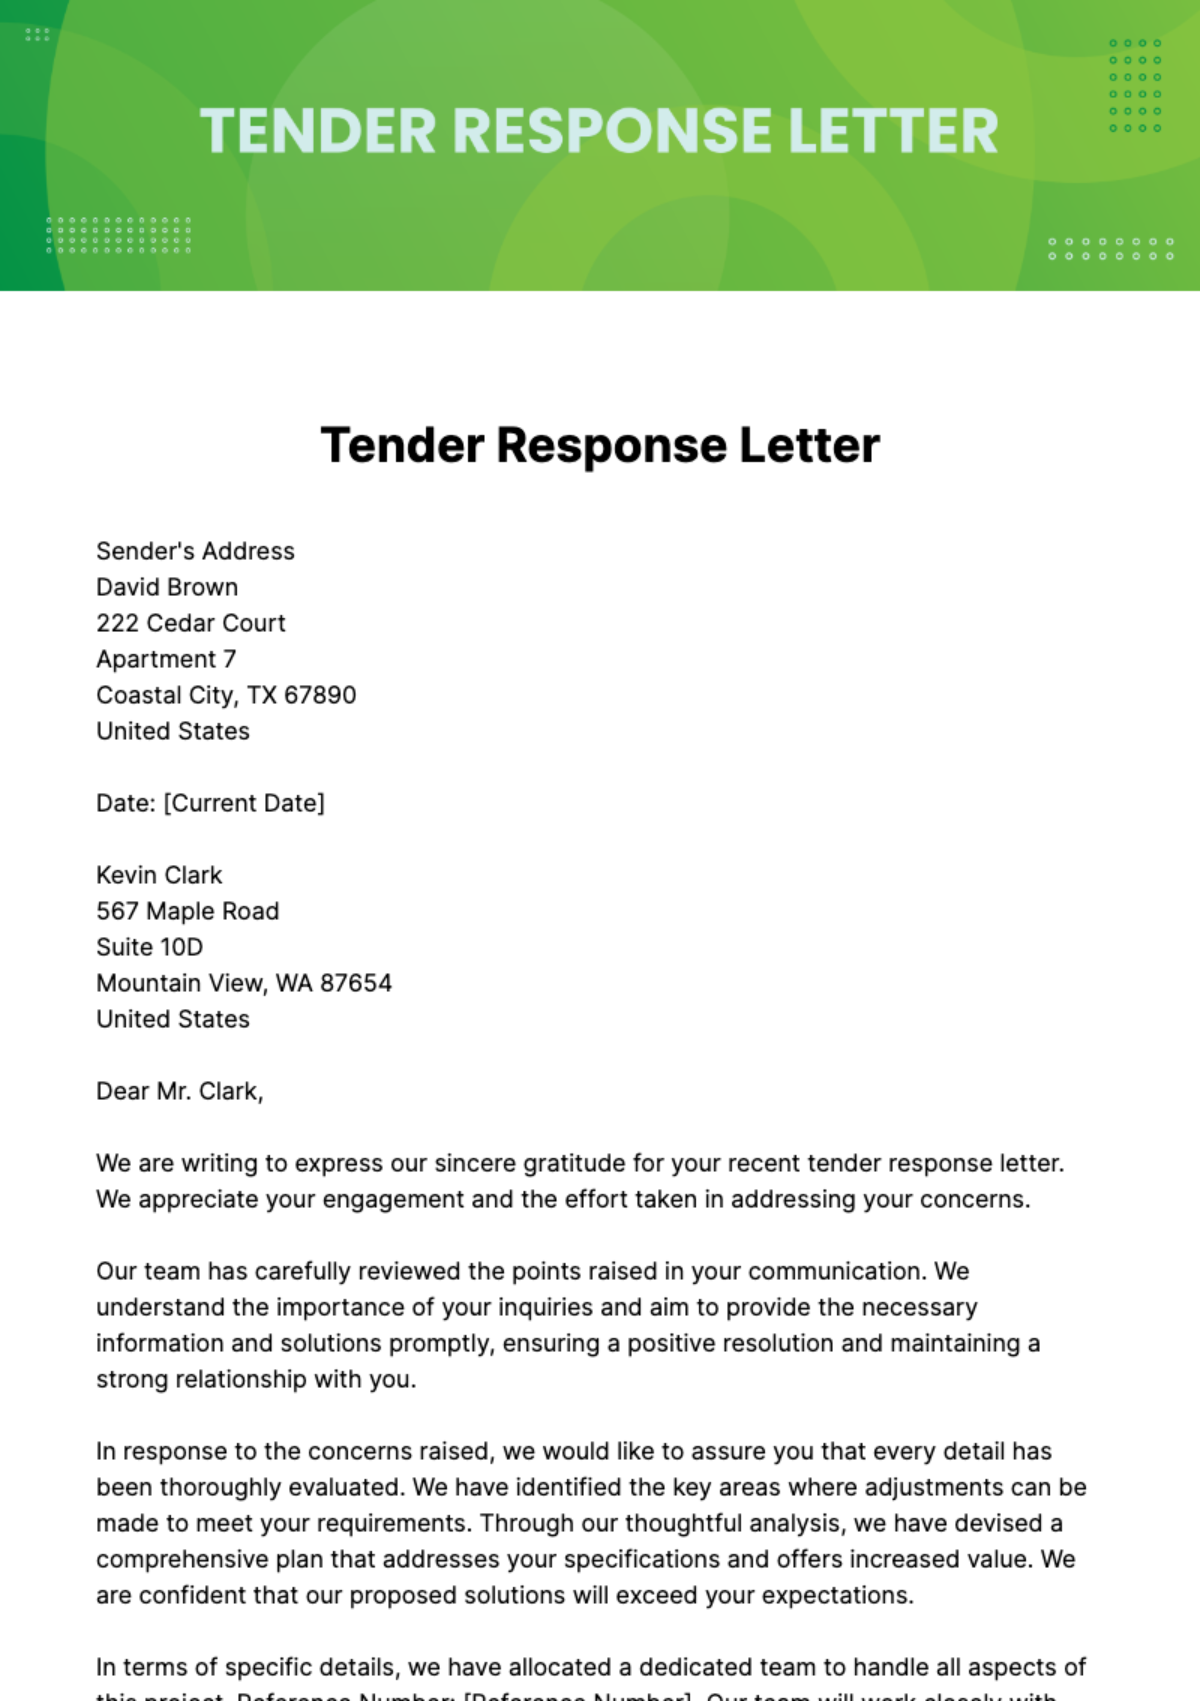 Tender Response Letter Template